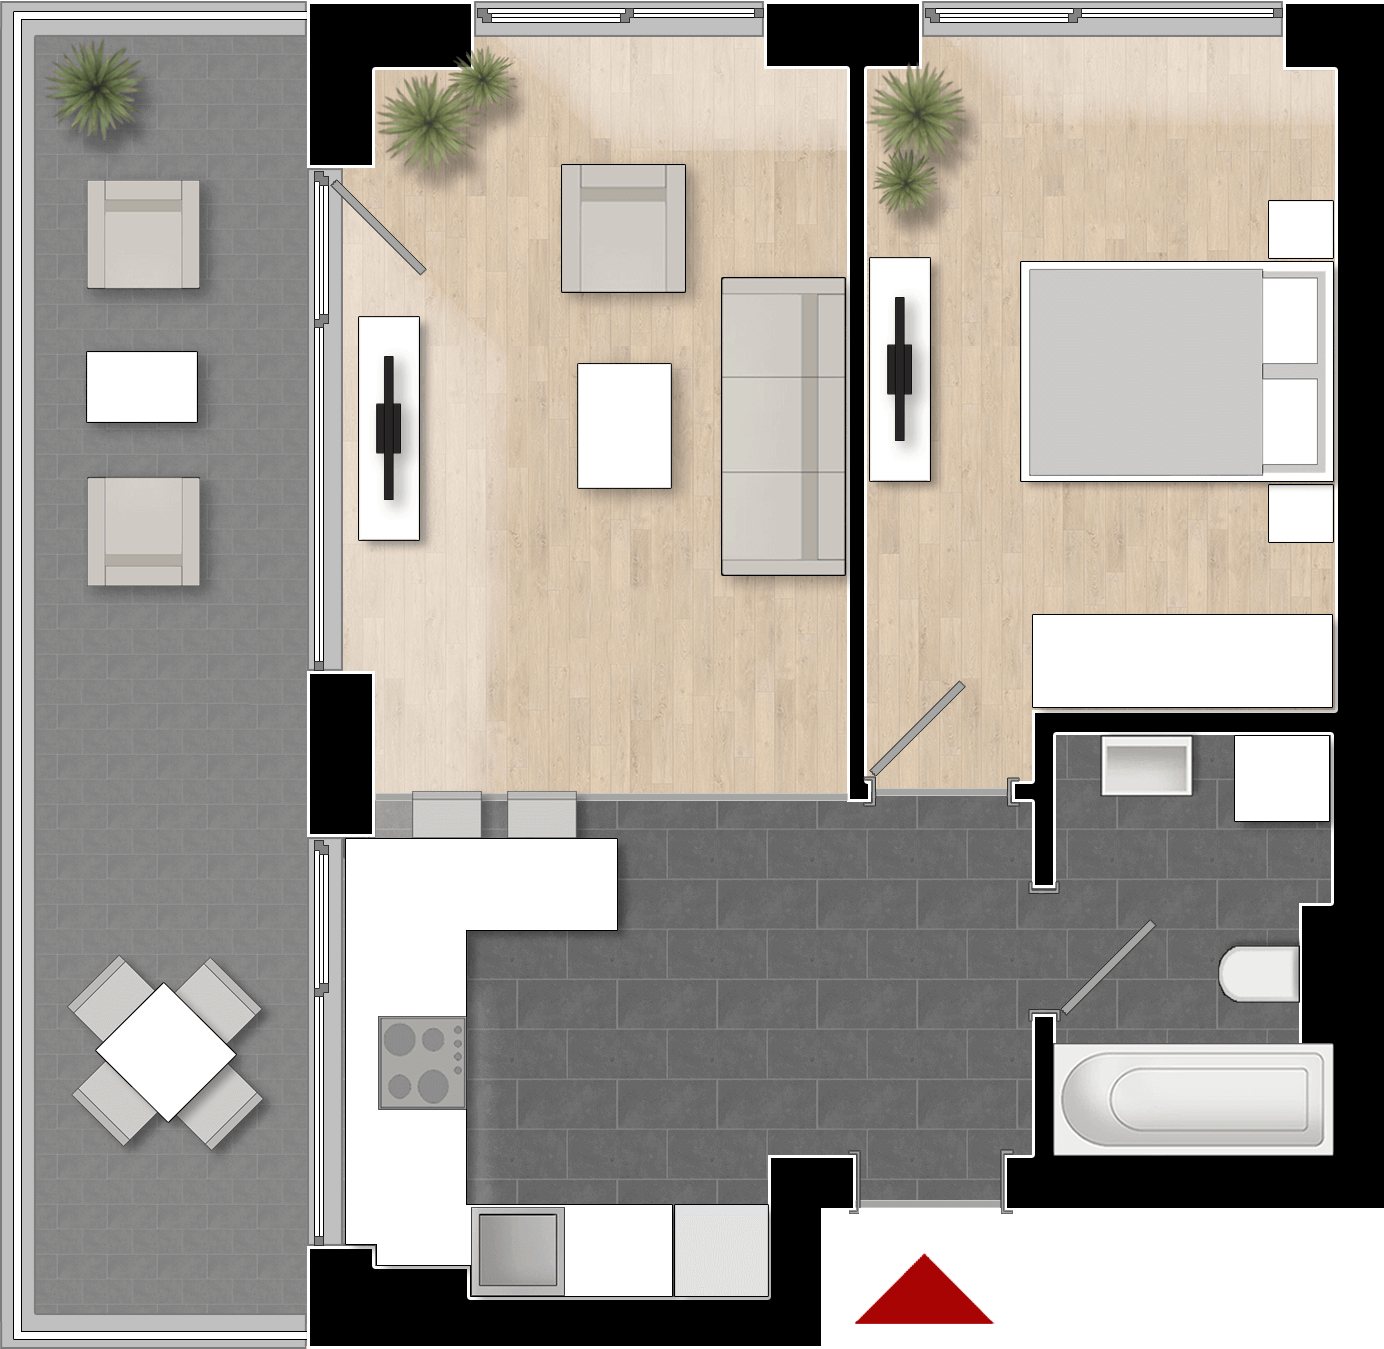  Apartament 804, Tip de apartament 1B cu 2 camere 